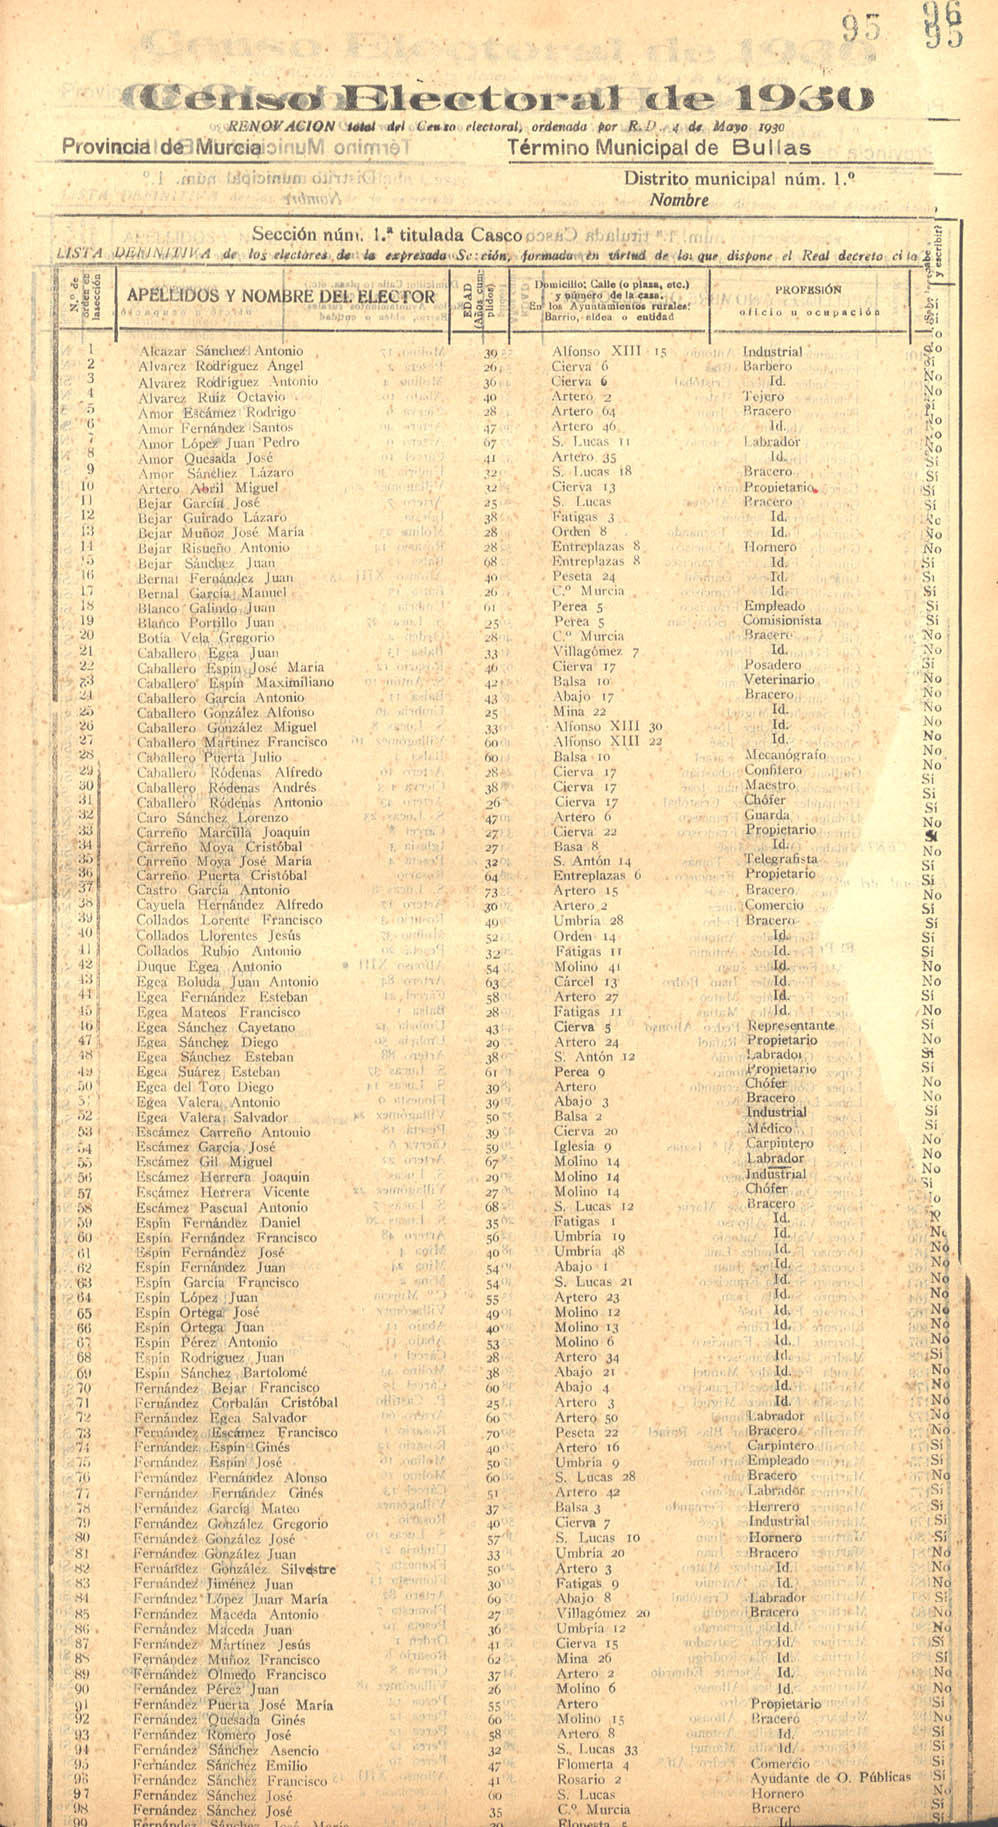 Censo electoral provincial de 1930. Listas definitivas: Bullas.